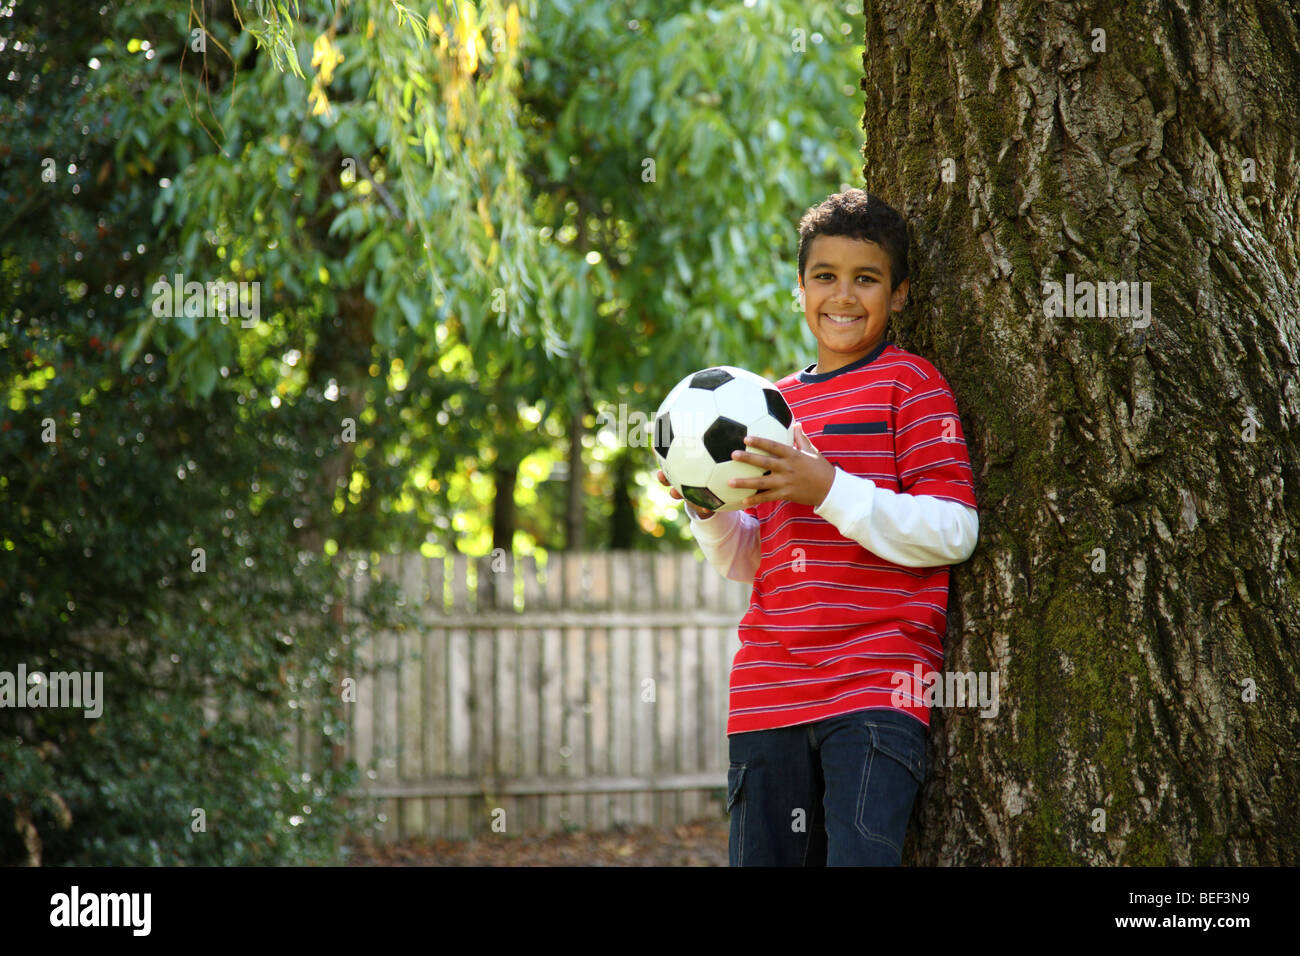 Portrait de jeune garçon en plein air avec ballon de soccer Banque D'Images